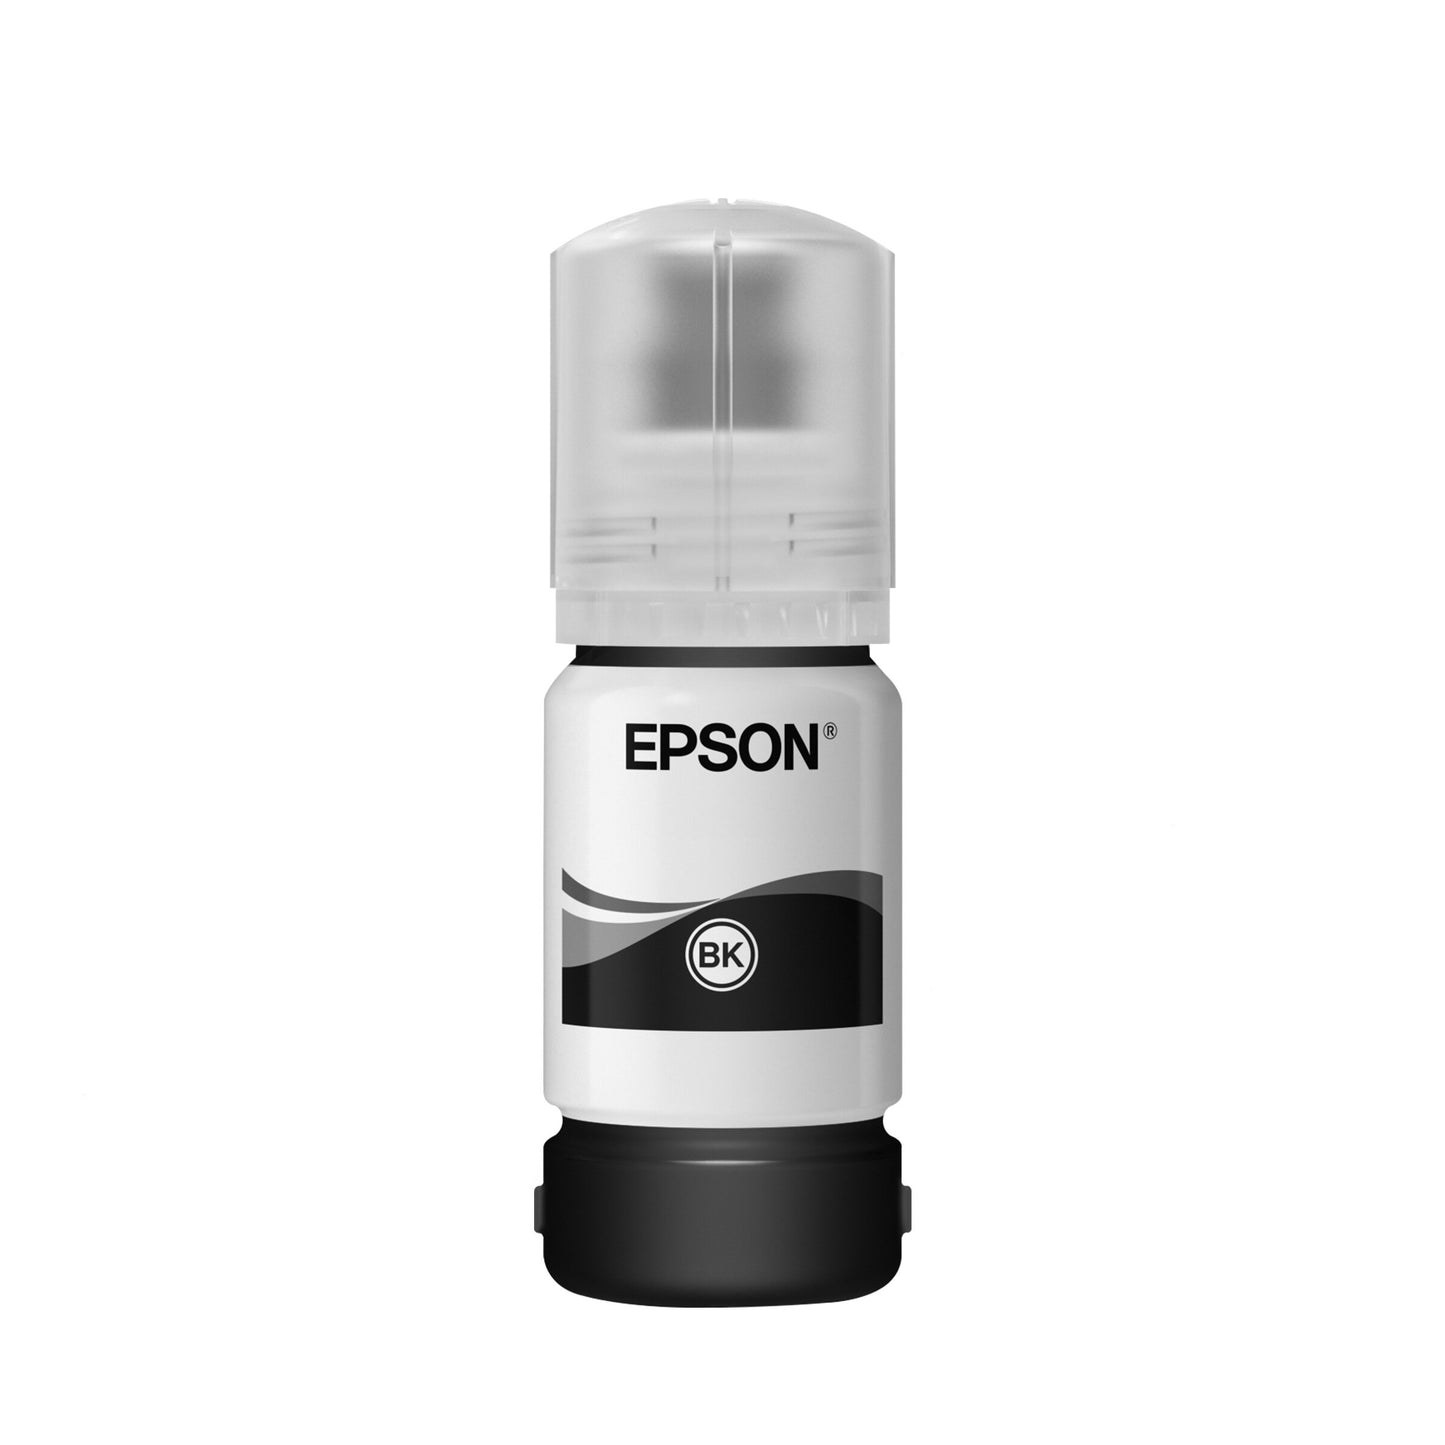 Epson 005S Ink Refill Bottle (40mL) Black for Printer EcoTank M1140 / M1120 / M2140 / M1100 / M3170